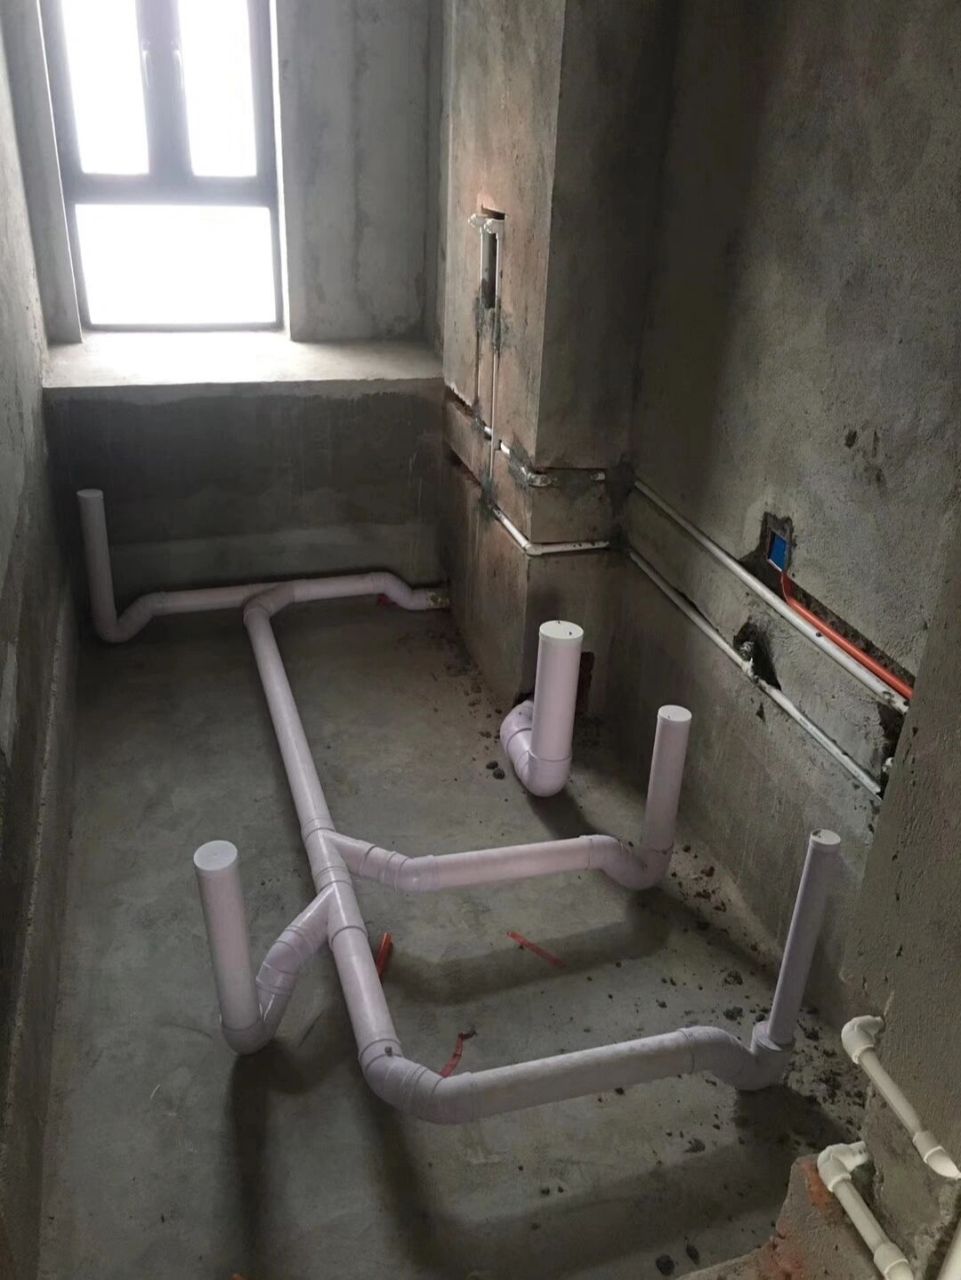 存水弯的重要性 洗手间排水口有没有必要安装存水弯呢?